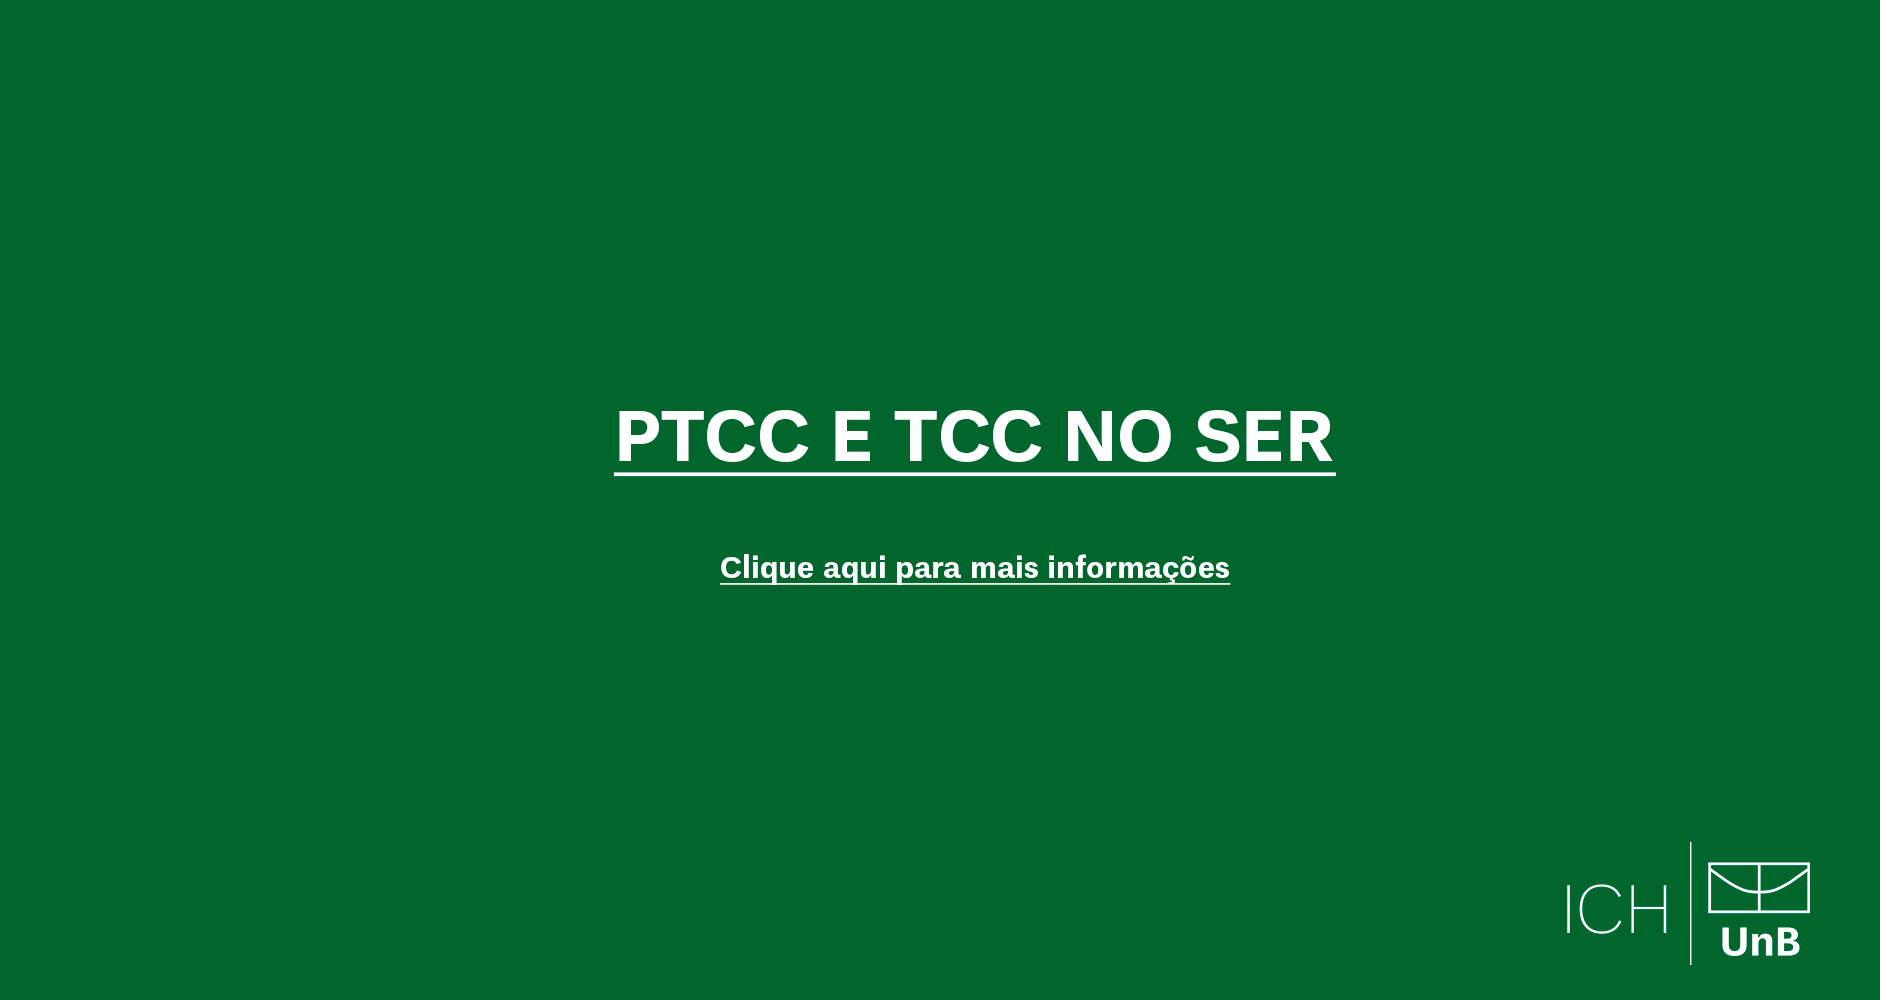 Discentes interessados/as na matrícula em PTCC e TCC 